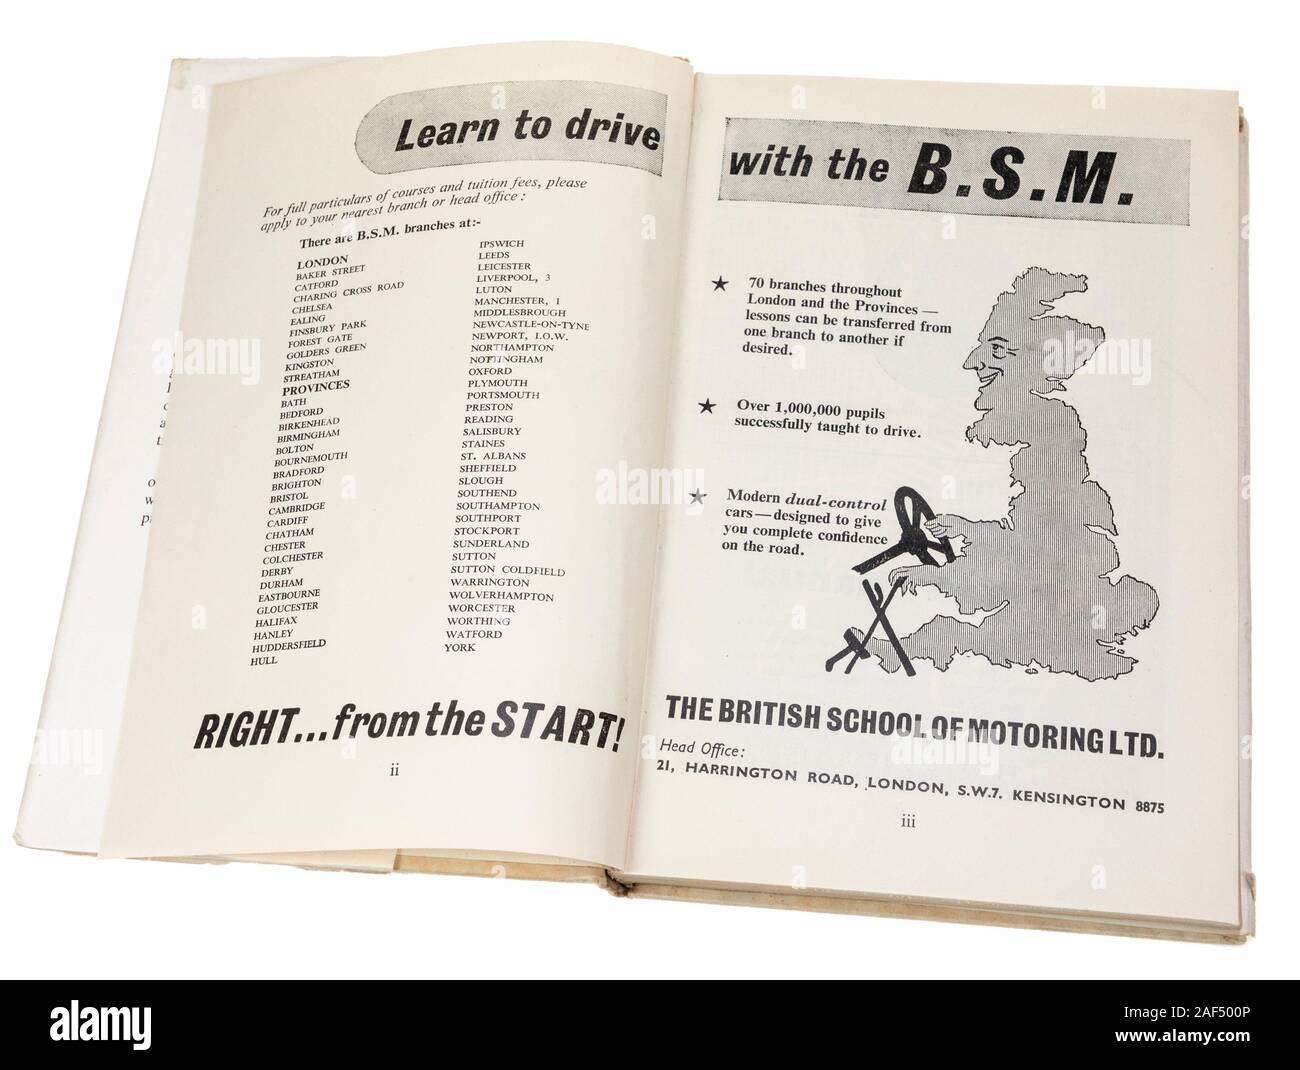 Lear a conducir con la BSM en cómo conducir un coche libro de instrucciones por la Escuela Británica de Automovilismo, 1950 Foto de stock